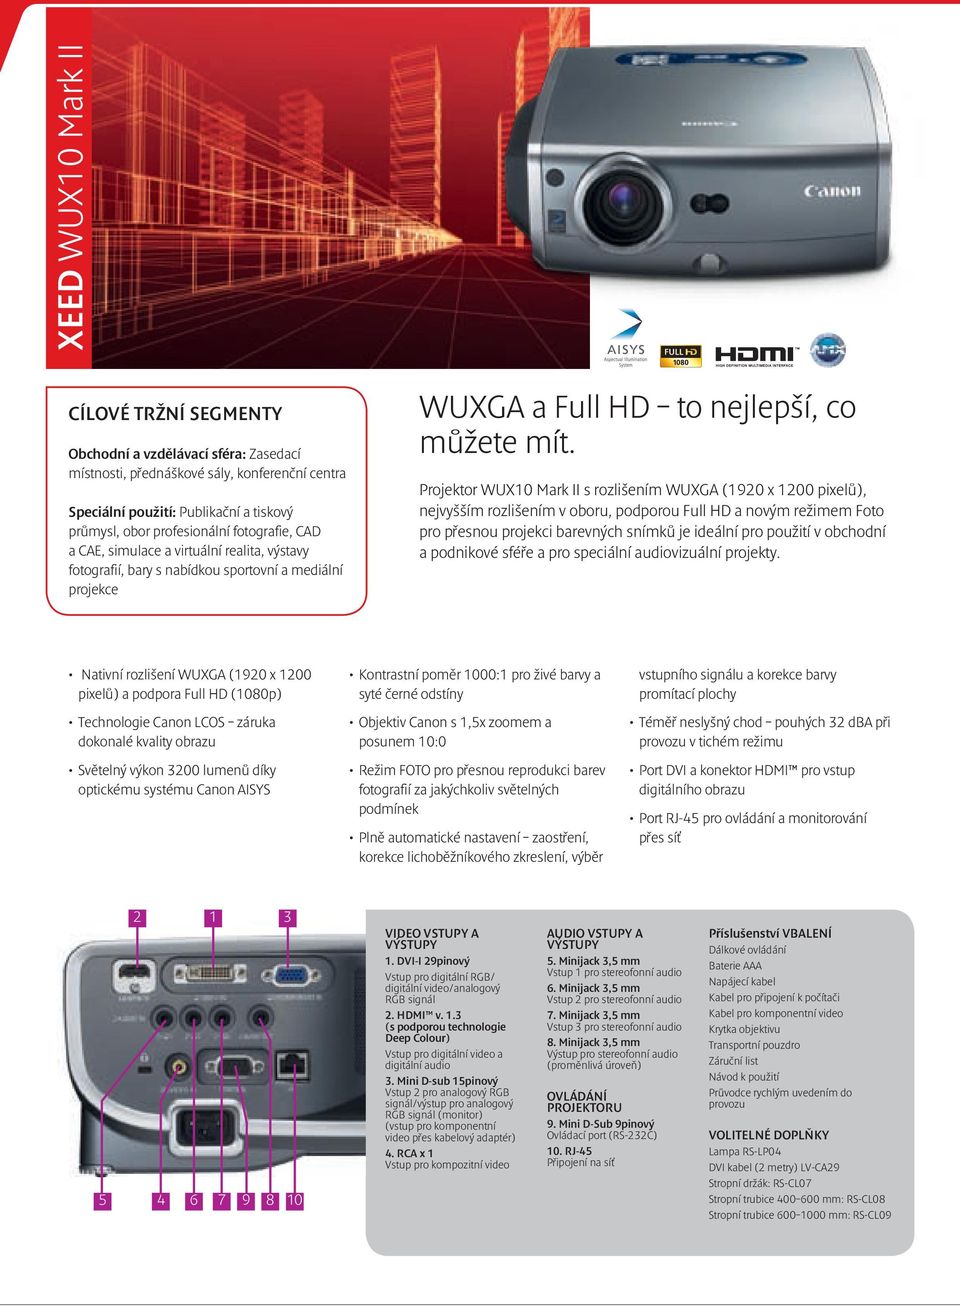 Projektor WUX10 Mark II s rozlišením WUXGA (1920 x 1200 pixelů), nejvyšším rozlišením v oboru, podporou Full HD a novým režimem Foto pro přesnou projekci barevných snímků je ideální pro použití v